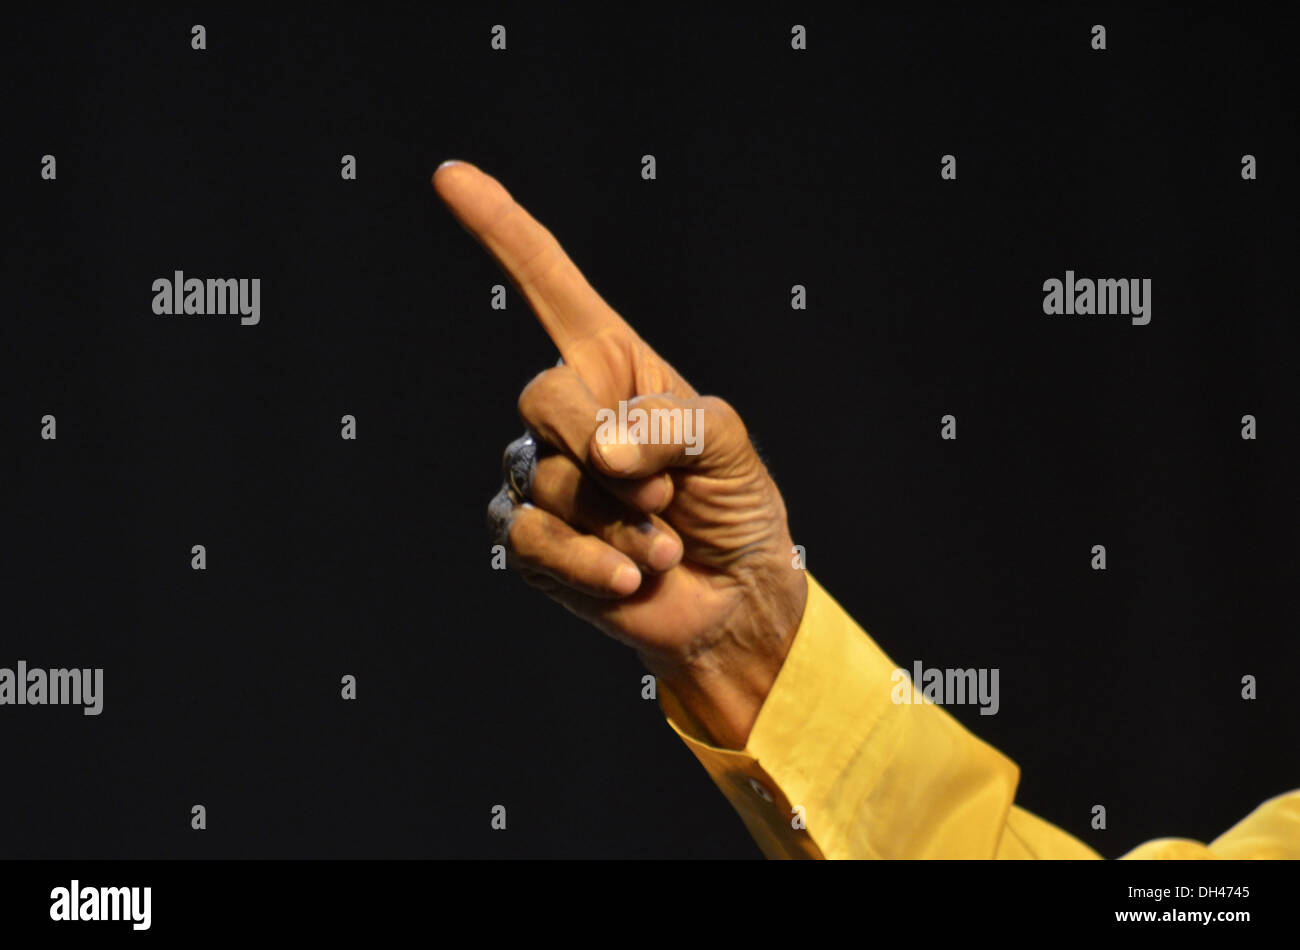 Artista masculino mano con el dedo índice Jodhpur Rajastán India Asia Foto de stock